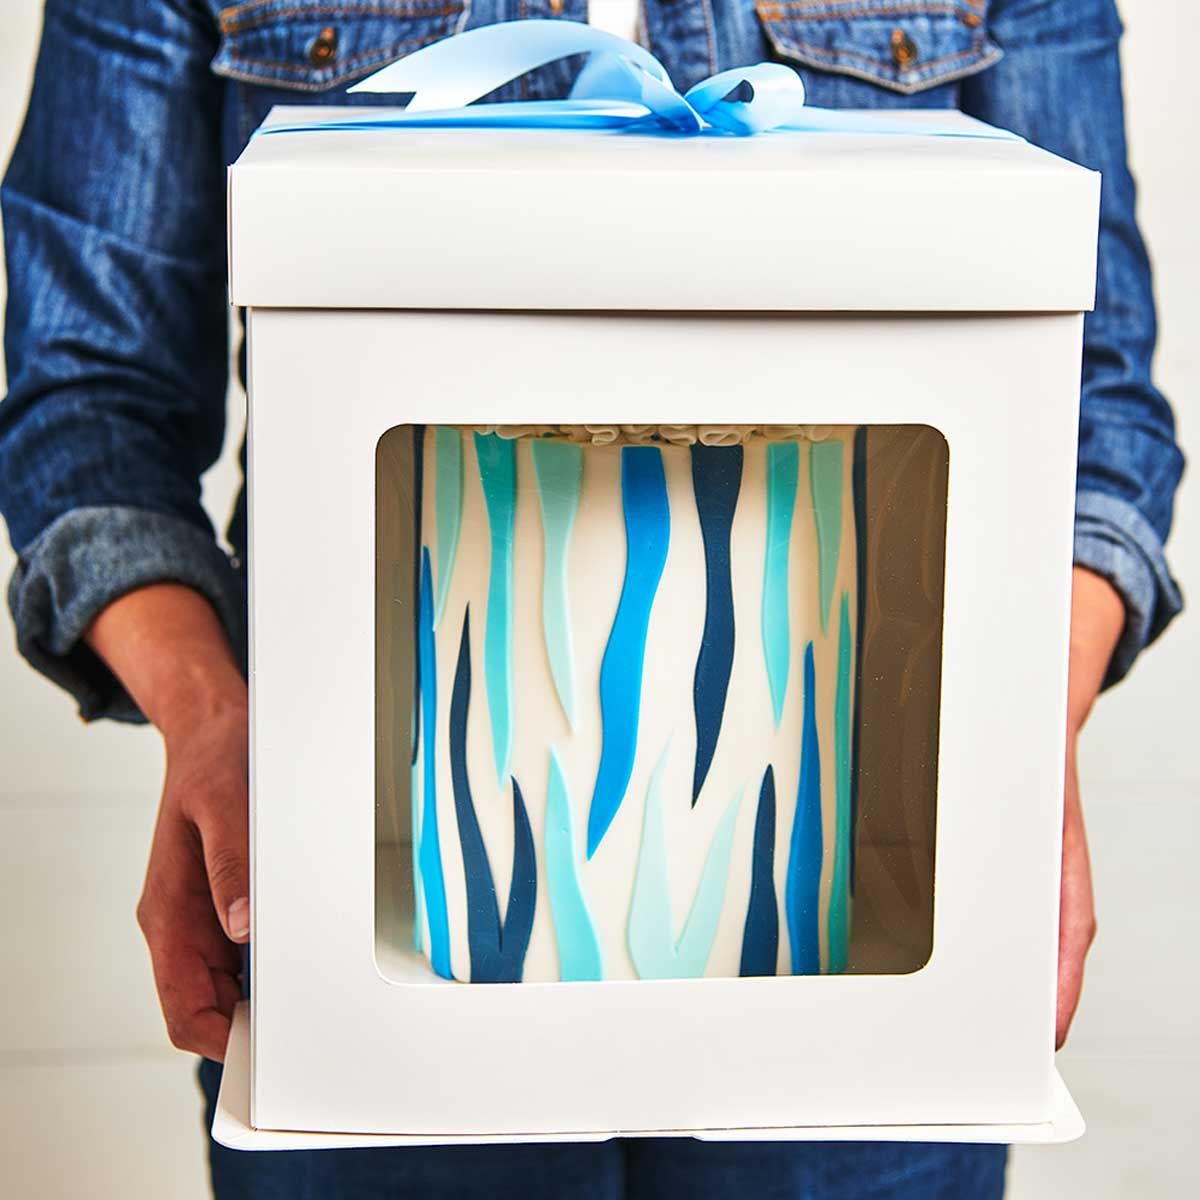 Tortenbox mit Fenster Stark & Hoch 30,5x30,5x34,5 cm